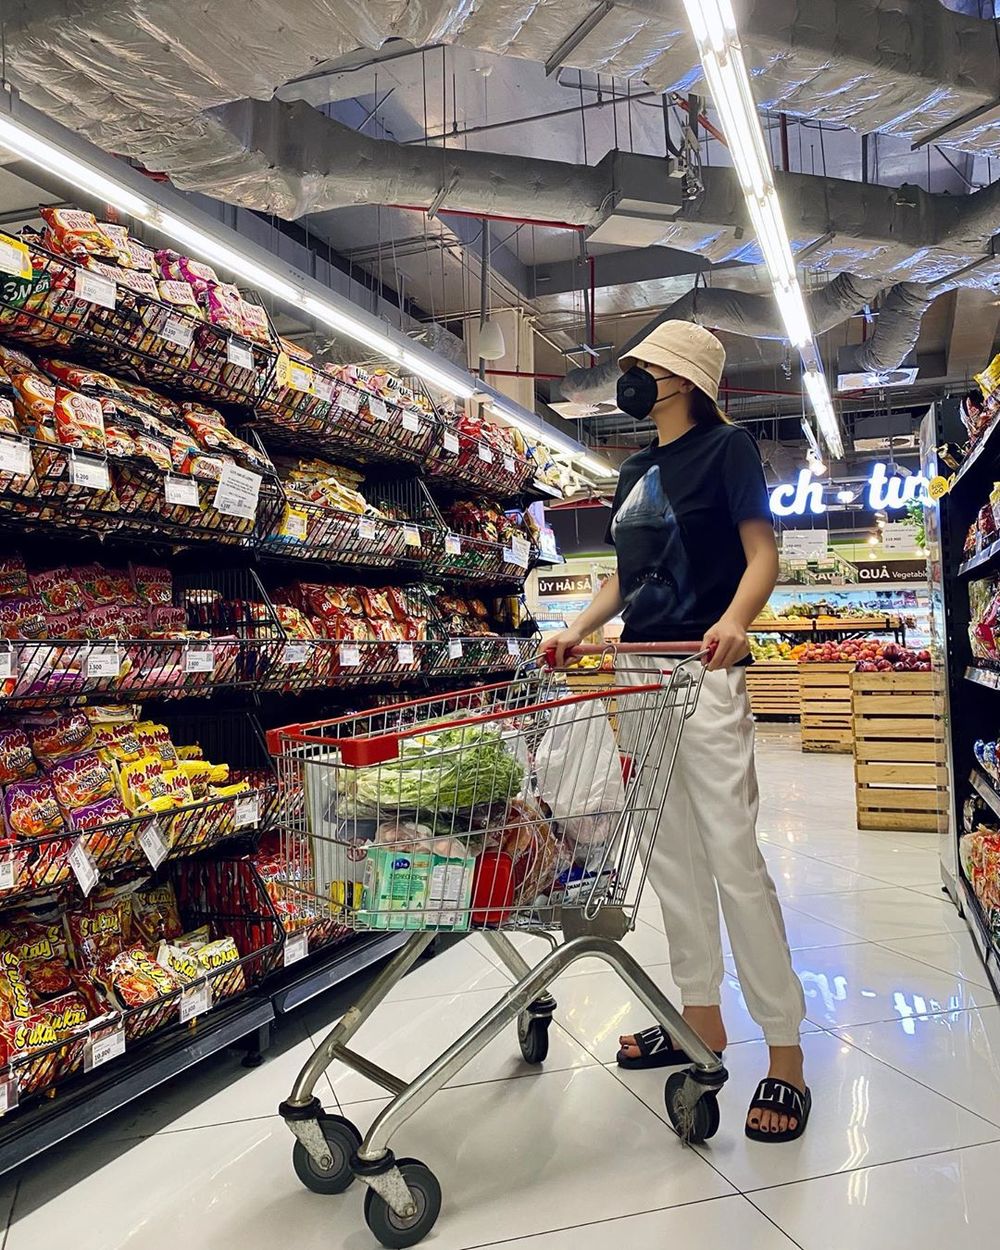  
Nàng Hậu tự đi siêu thị, dự trữ lương thực trong những ngày dịch. (Ảnh: Instagram nhân vật)